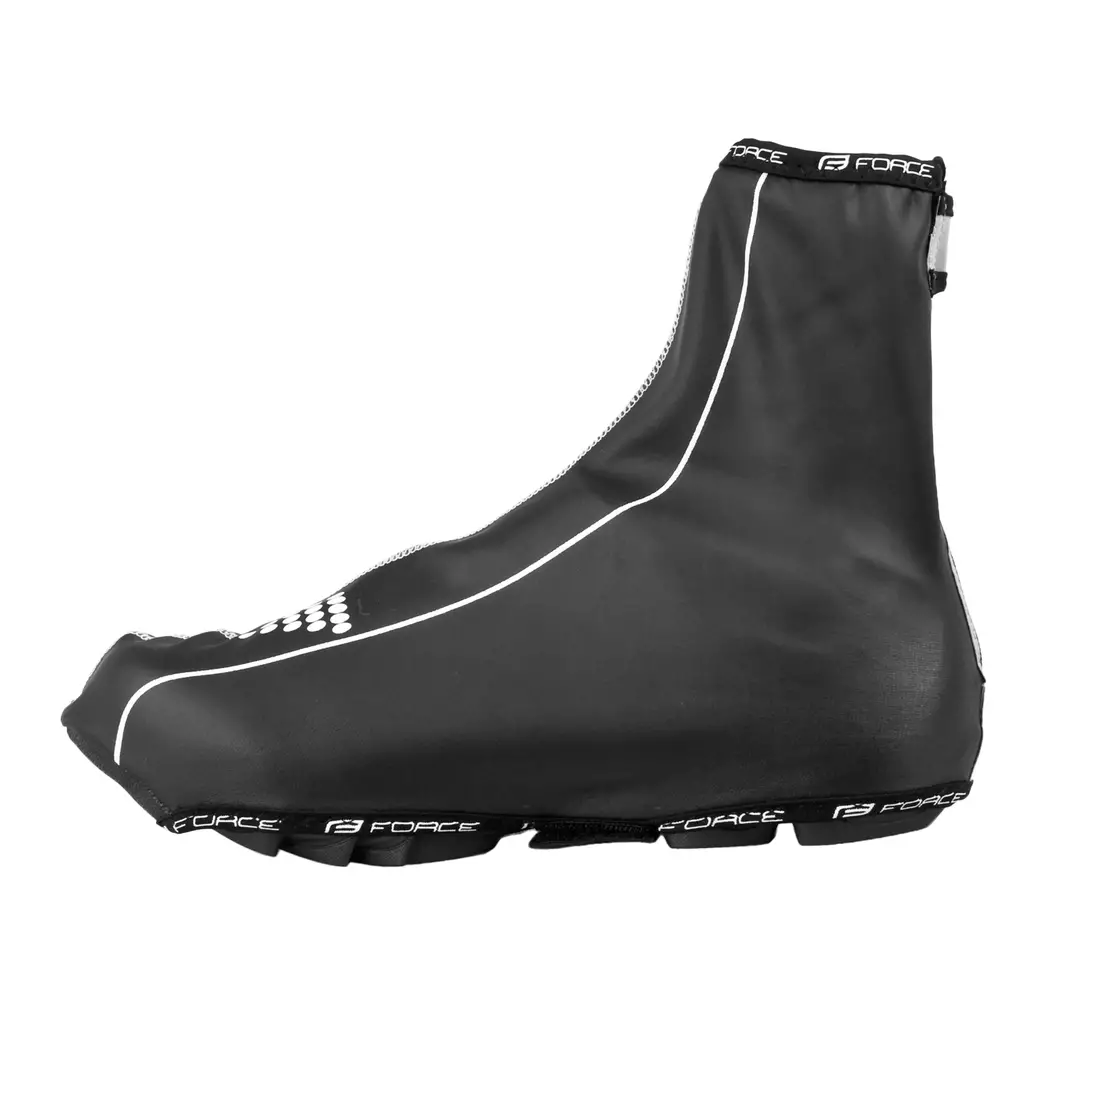 FORCE PU DRY - 90600 - Huse pentru pantofi MTB, rezistente la ploaie